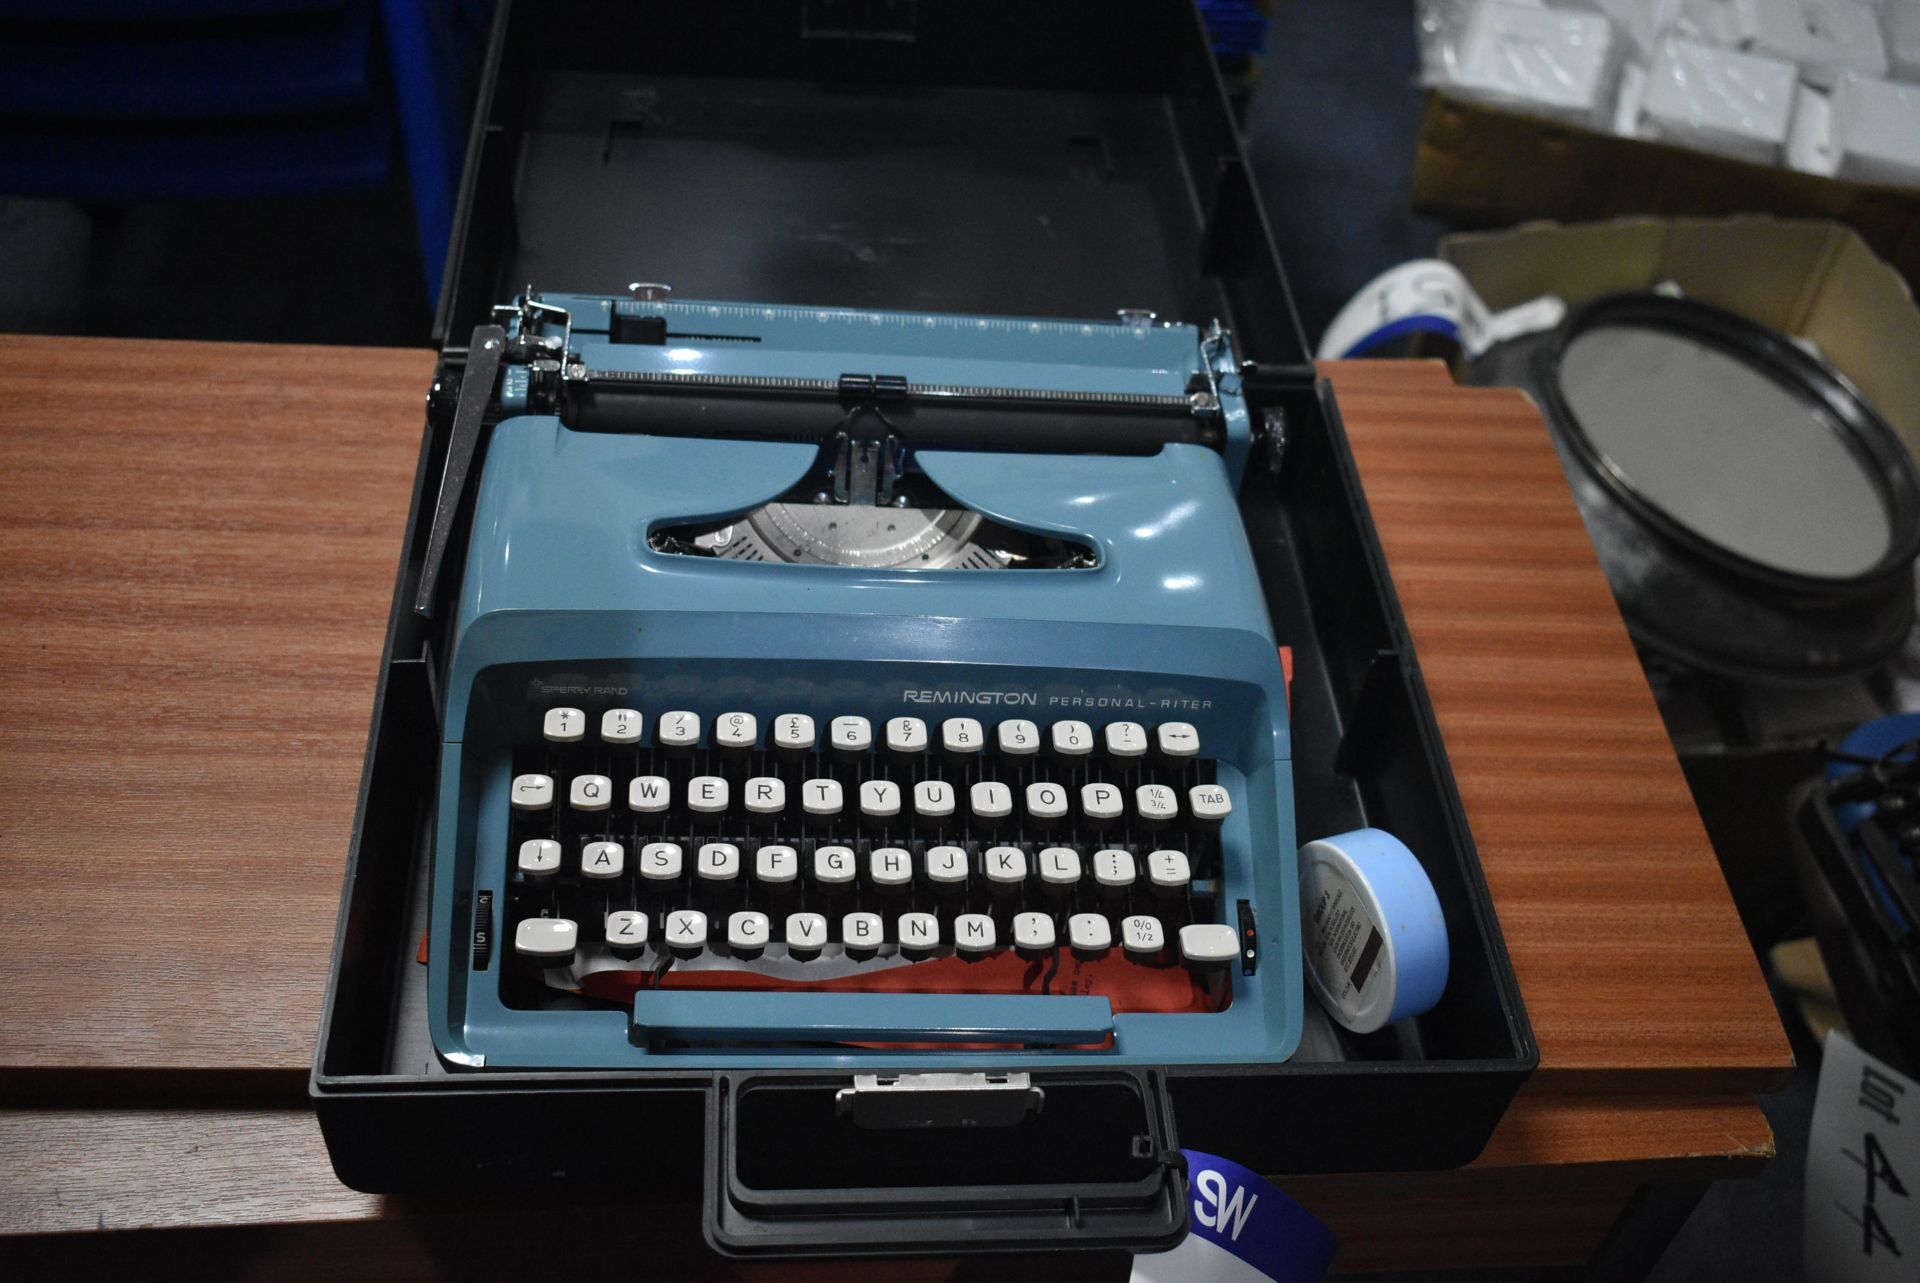 Remington Personal-Riter Portable Typewriter, in c